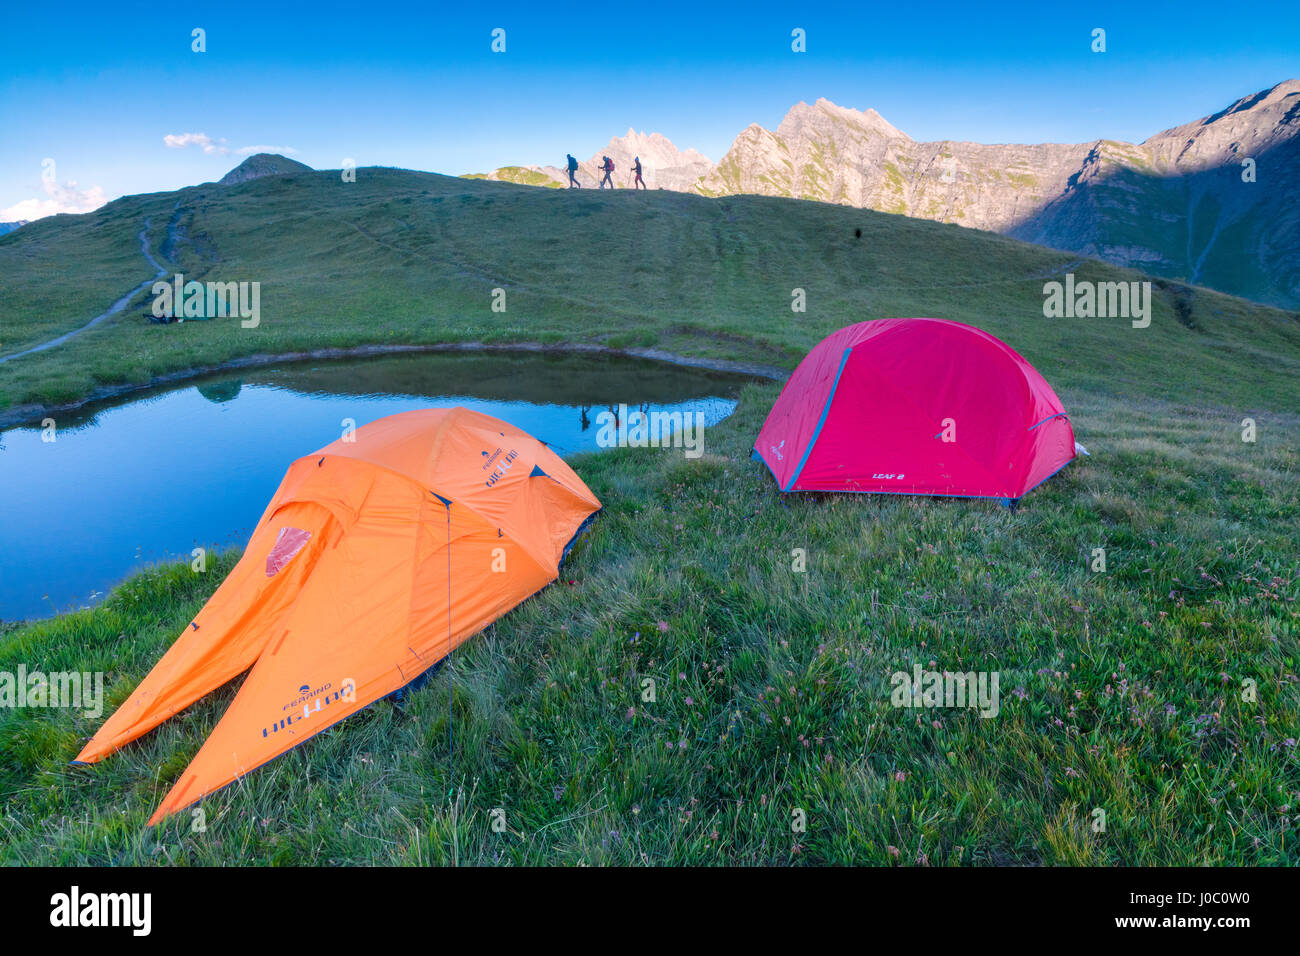 Les tentes de camping et de randonnée avec le Mont de la Saxe sur l'arrière-plan, Courmayeur, vallée d'aoste, Italie Banque D'Images